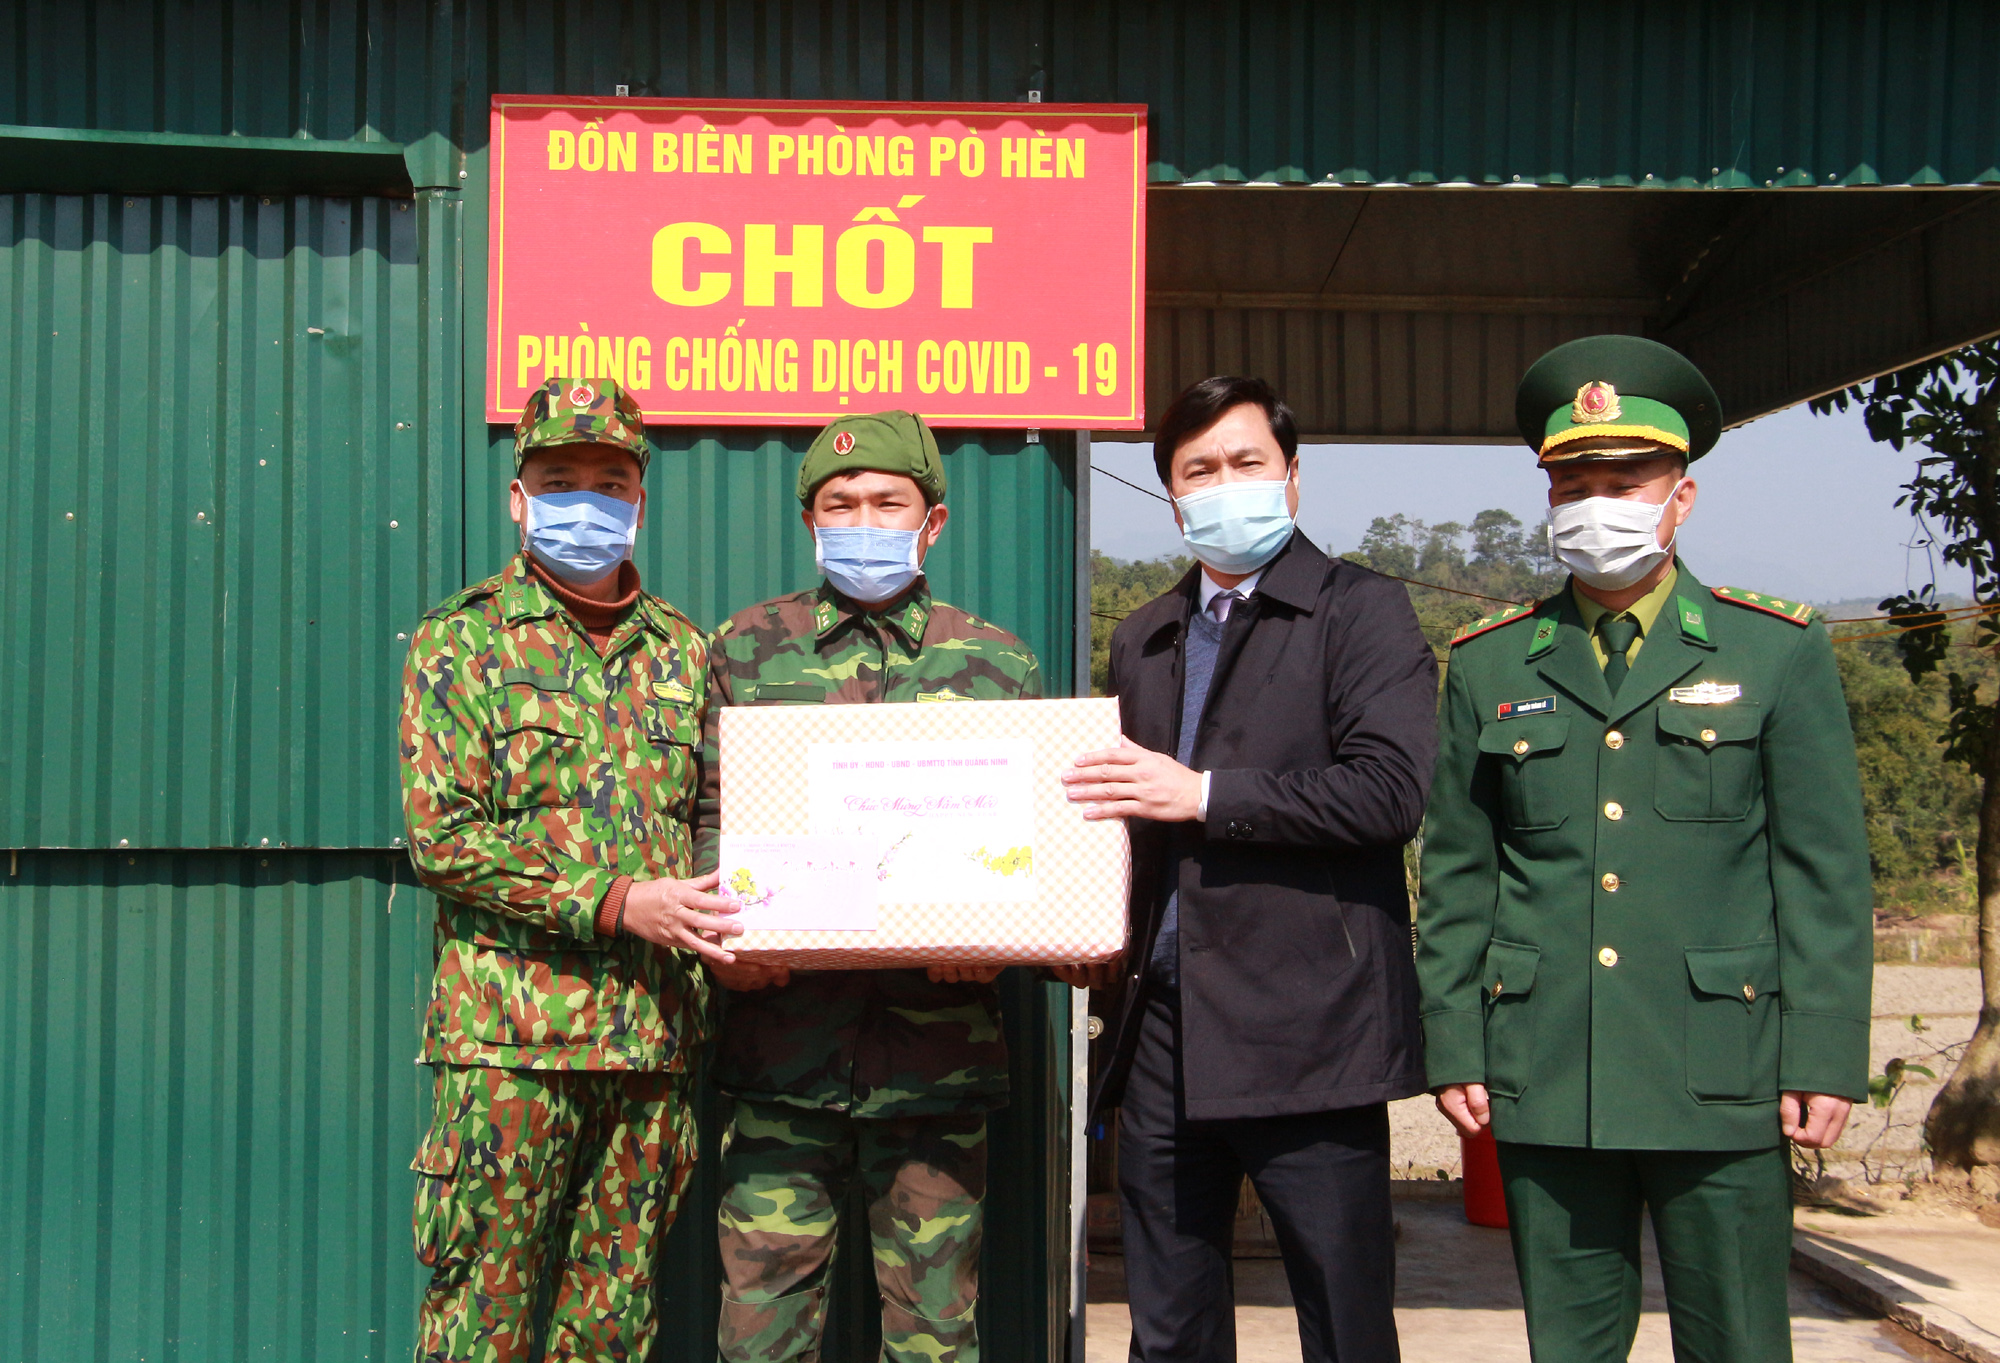 Đồng chí Nguyễn Tường Văn, Chủ tịch UBND tỉnh, tặng quà, chúc Tết cán bộ, chiến sỹ Đồn Biên phòng Pò Hèn đang tham gia trực tại các chốt phòng, chống dịch Covid-19 tại địa bàn biên giới.